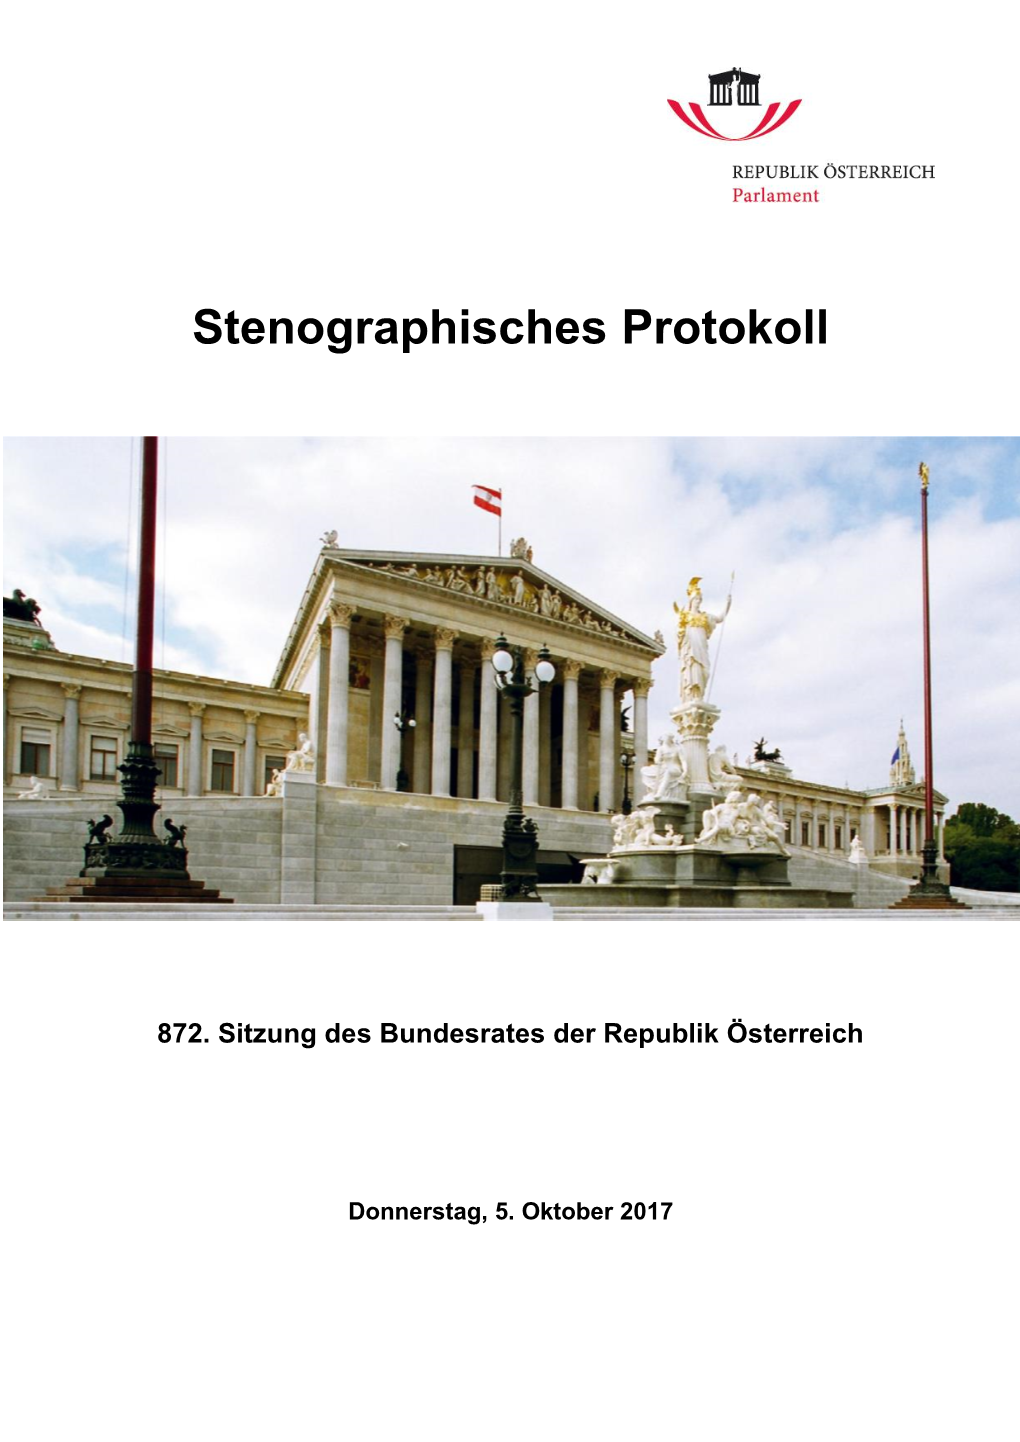 Stenographisches Protokoll Der 872. Sitzung / PDF, 4227 KB